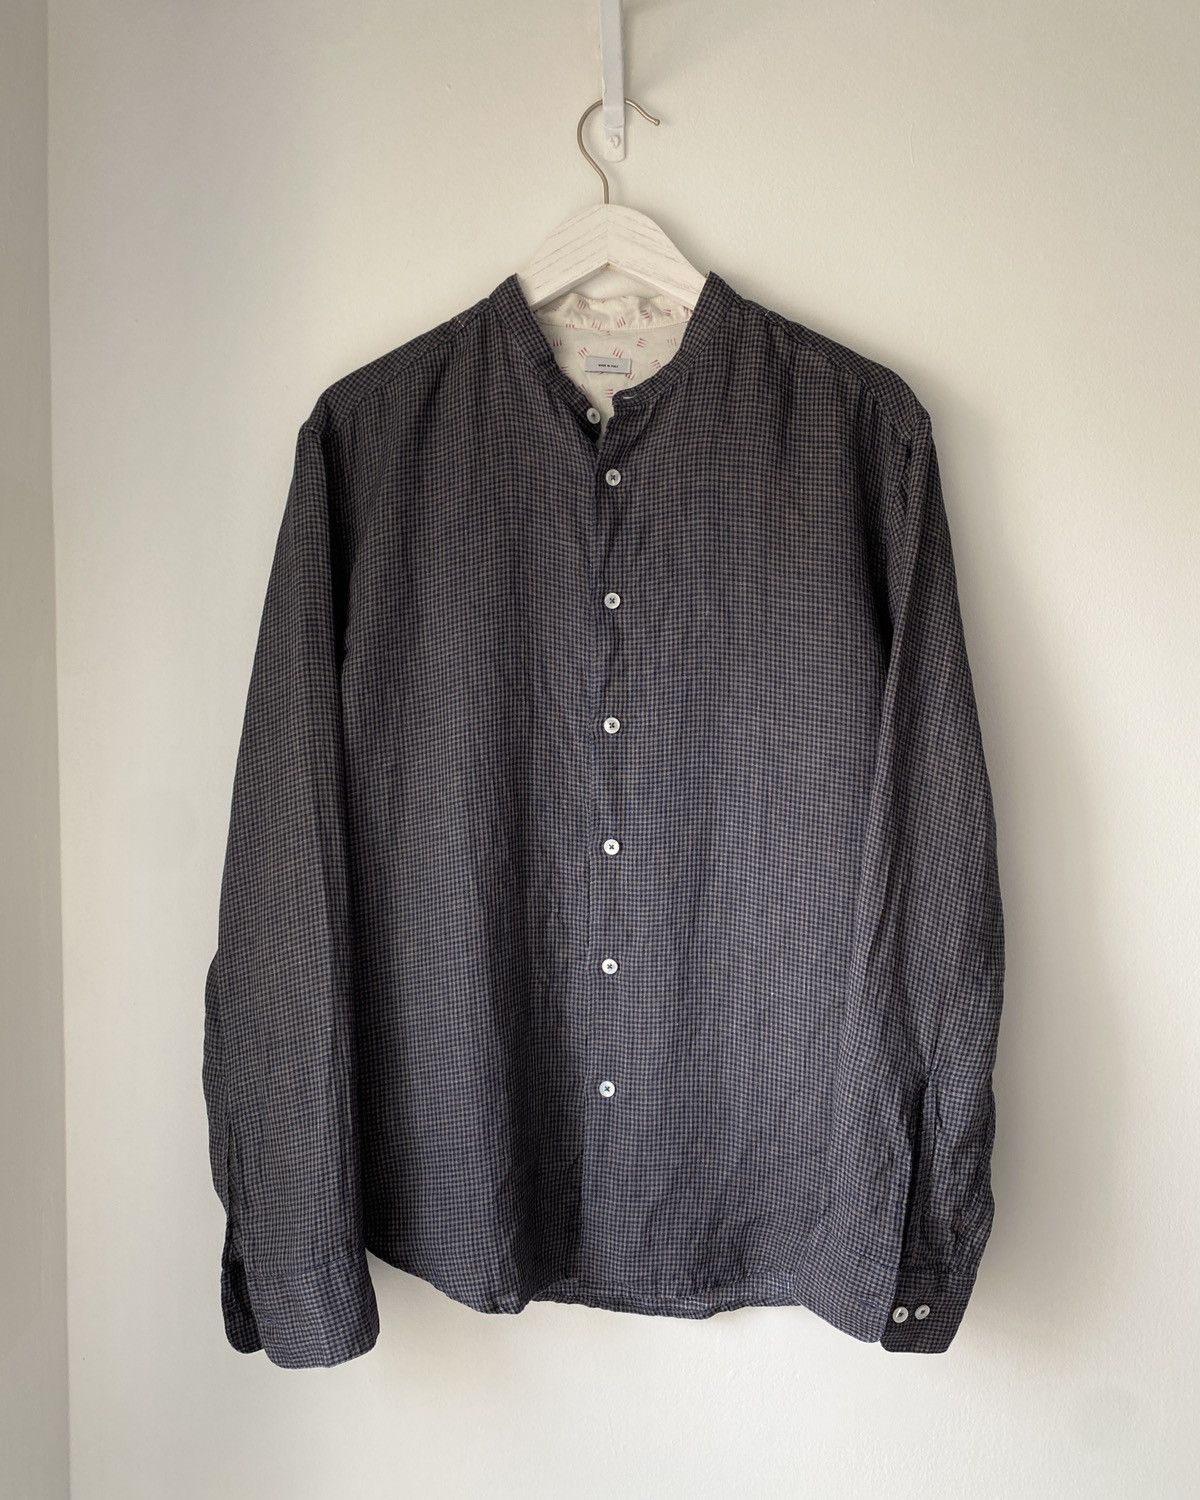 Visvim S/S ‘14 Indigo Check Linen Shirt | Grailed